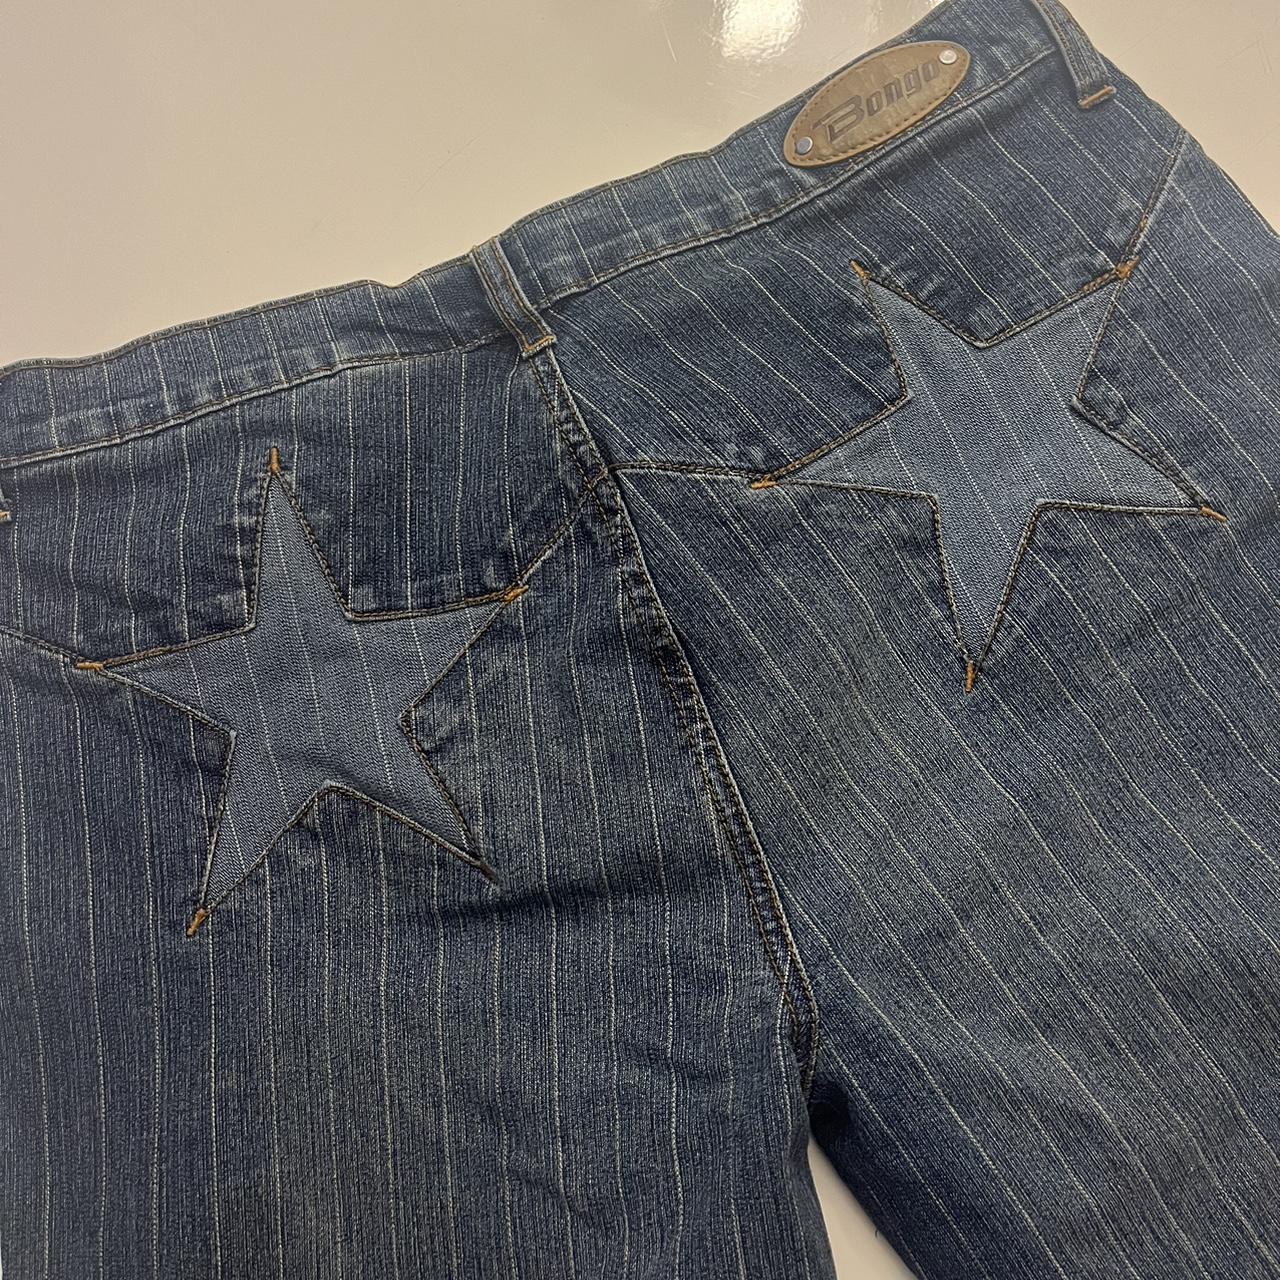 Bongo Pinstripe Flare Star Pocket Jeans! SUPER... - Depop